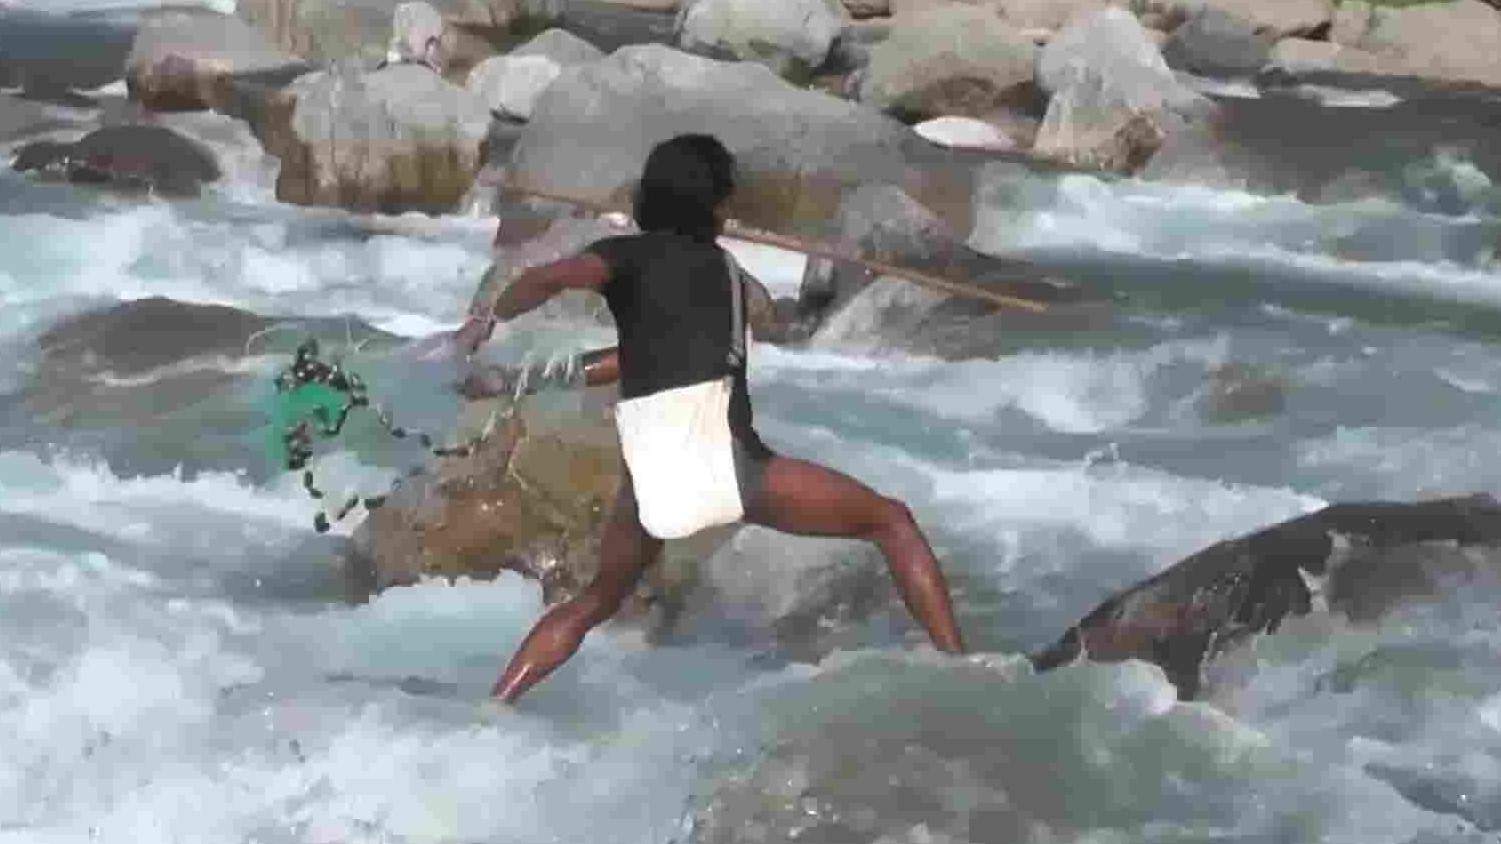 尼泊尔纪录片《尼泊尔乡村生活》第1部分全201集 尼泊尔语无字 1080p高清网盘下载